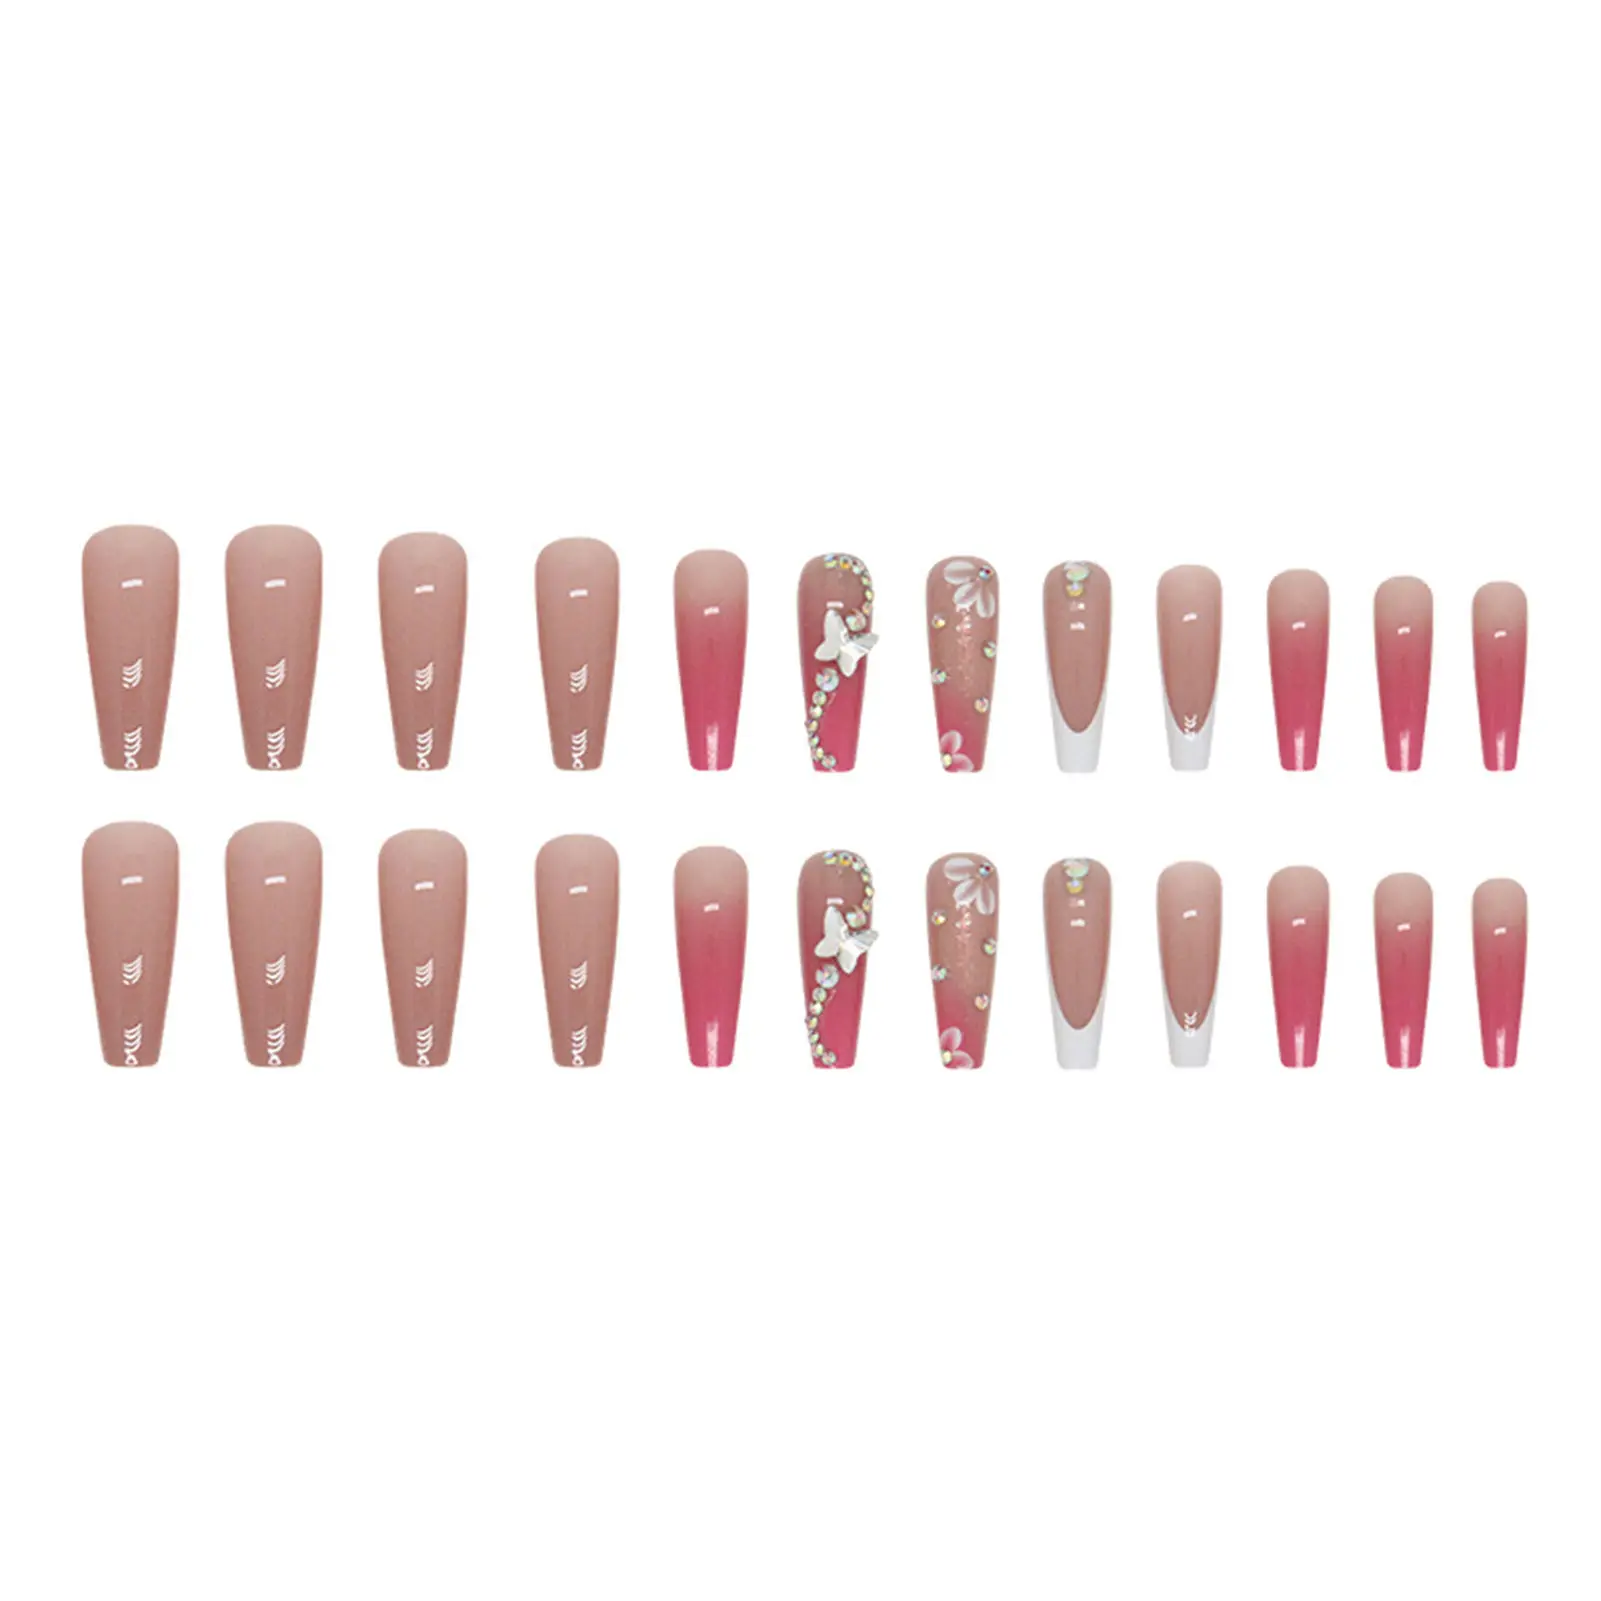 

Градиентные розовые длинные накладные ногти с белыми краями, легкие и легко приклеивающиеся накладные ногти для любителей маникюра и блогеров красоты